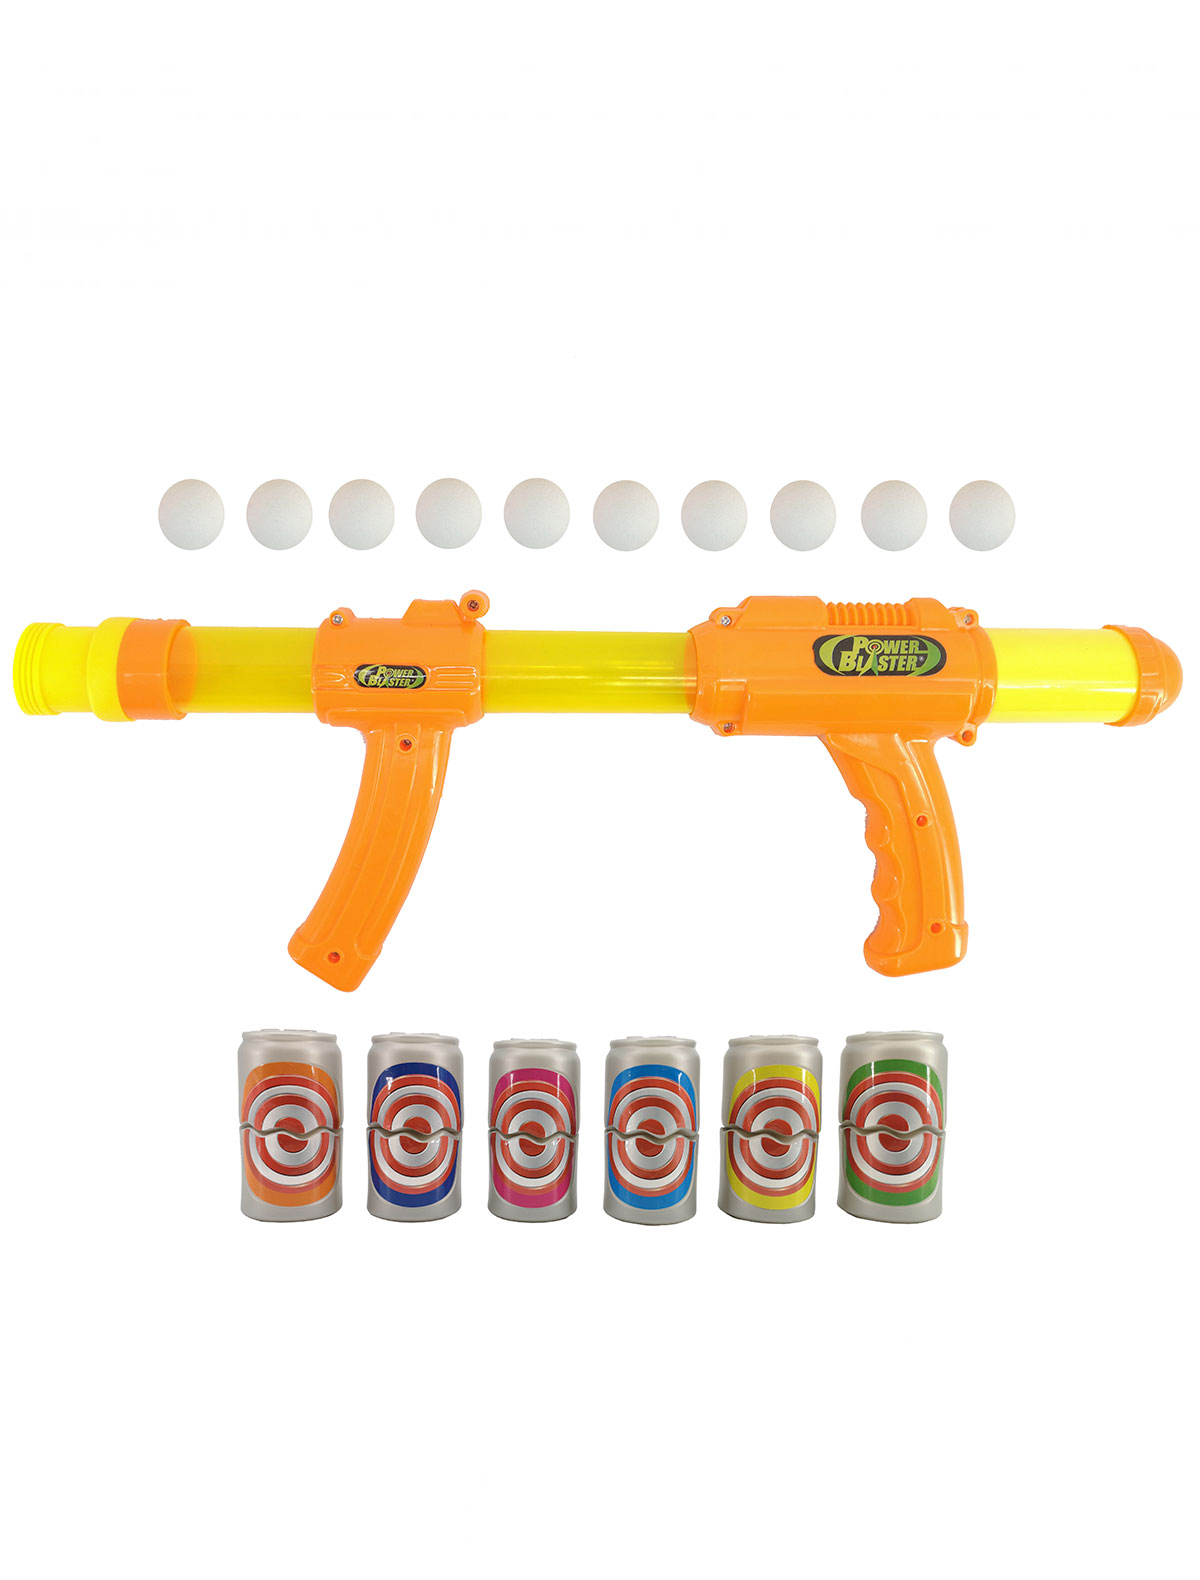 Купить 2213435, Игрушка Toy Target, оранжевый, 7134529071777